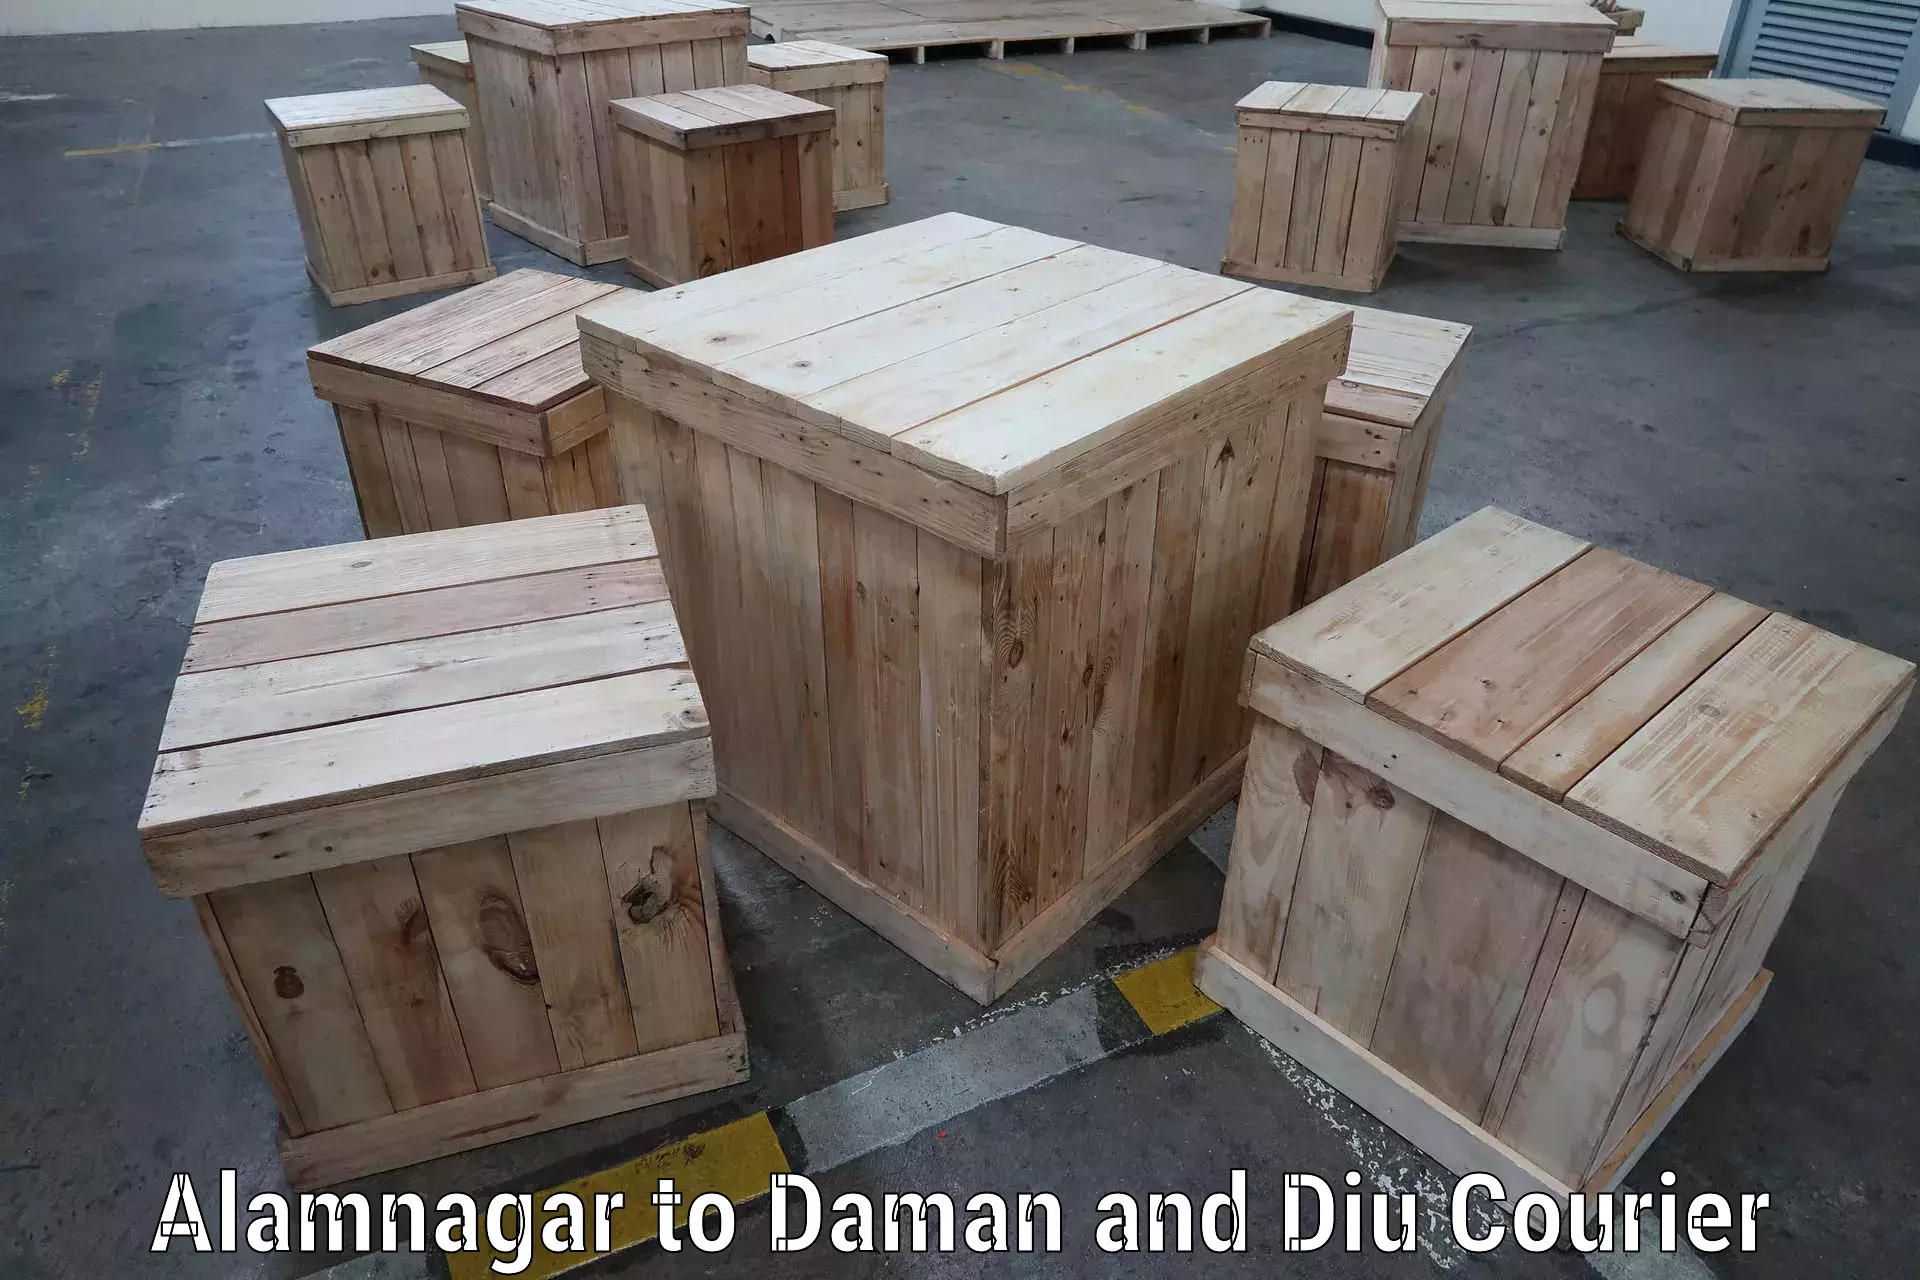 Global parcel delivery Alamnagar to Daman